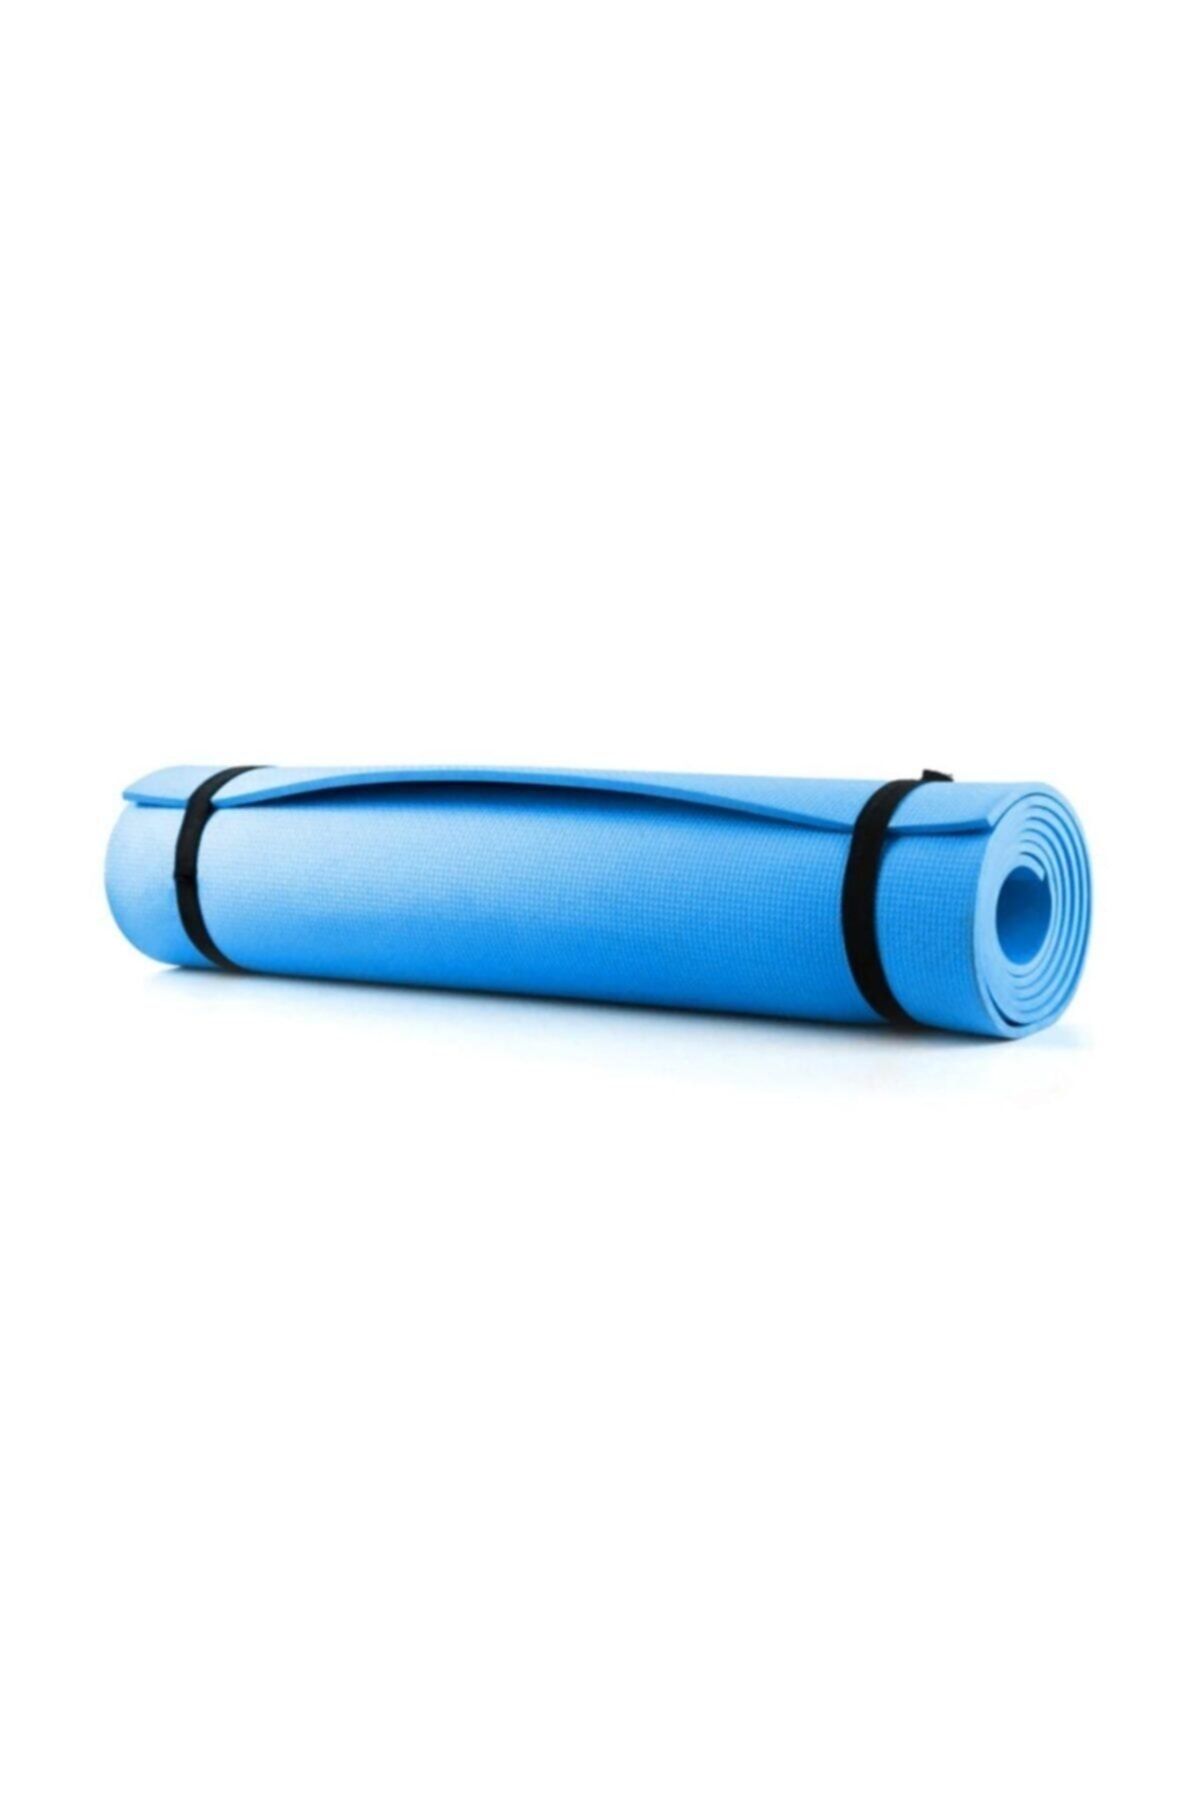 Genel Markalar Mavi Pilates Matı Minderi Egzersiz Minderi Yer Matı 150x50 cm 6,45 mm Ykm65